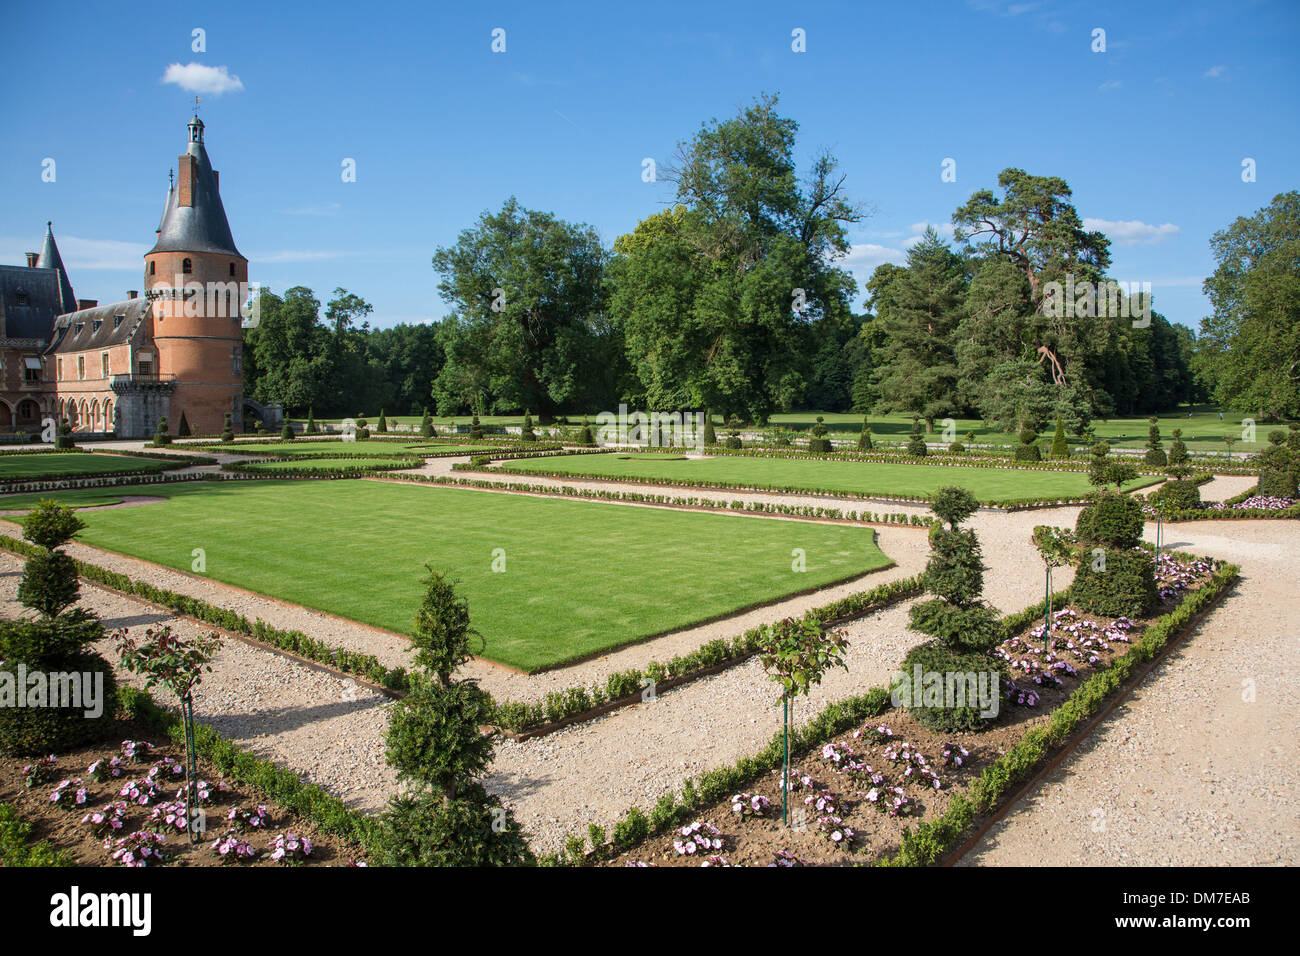 Jardin à la française créé à partir de dessins par André Le Nôtre, jardinier du roi Louis XIV, le château de Maintenon, Eure-et-Loir (28), FRANCE Banque D'Images